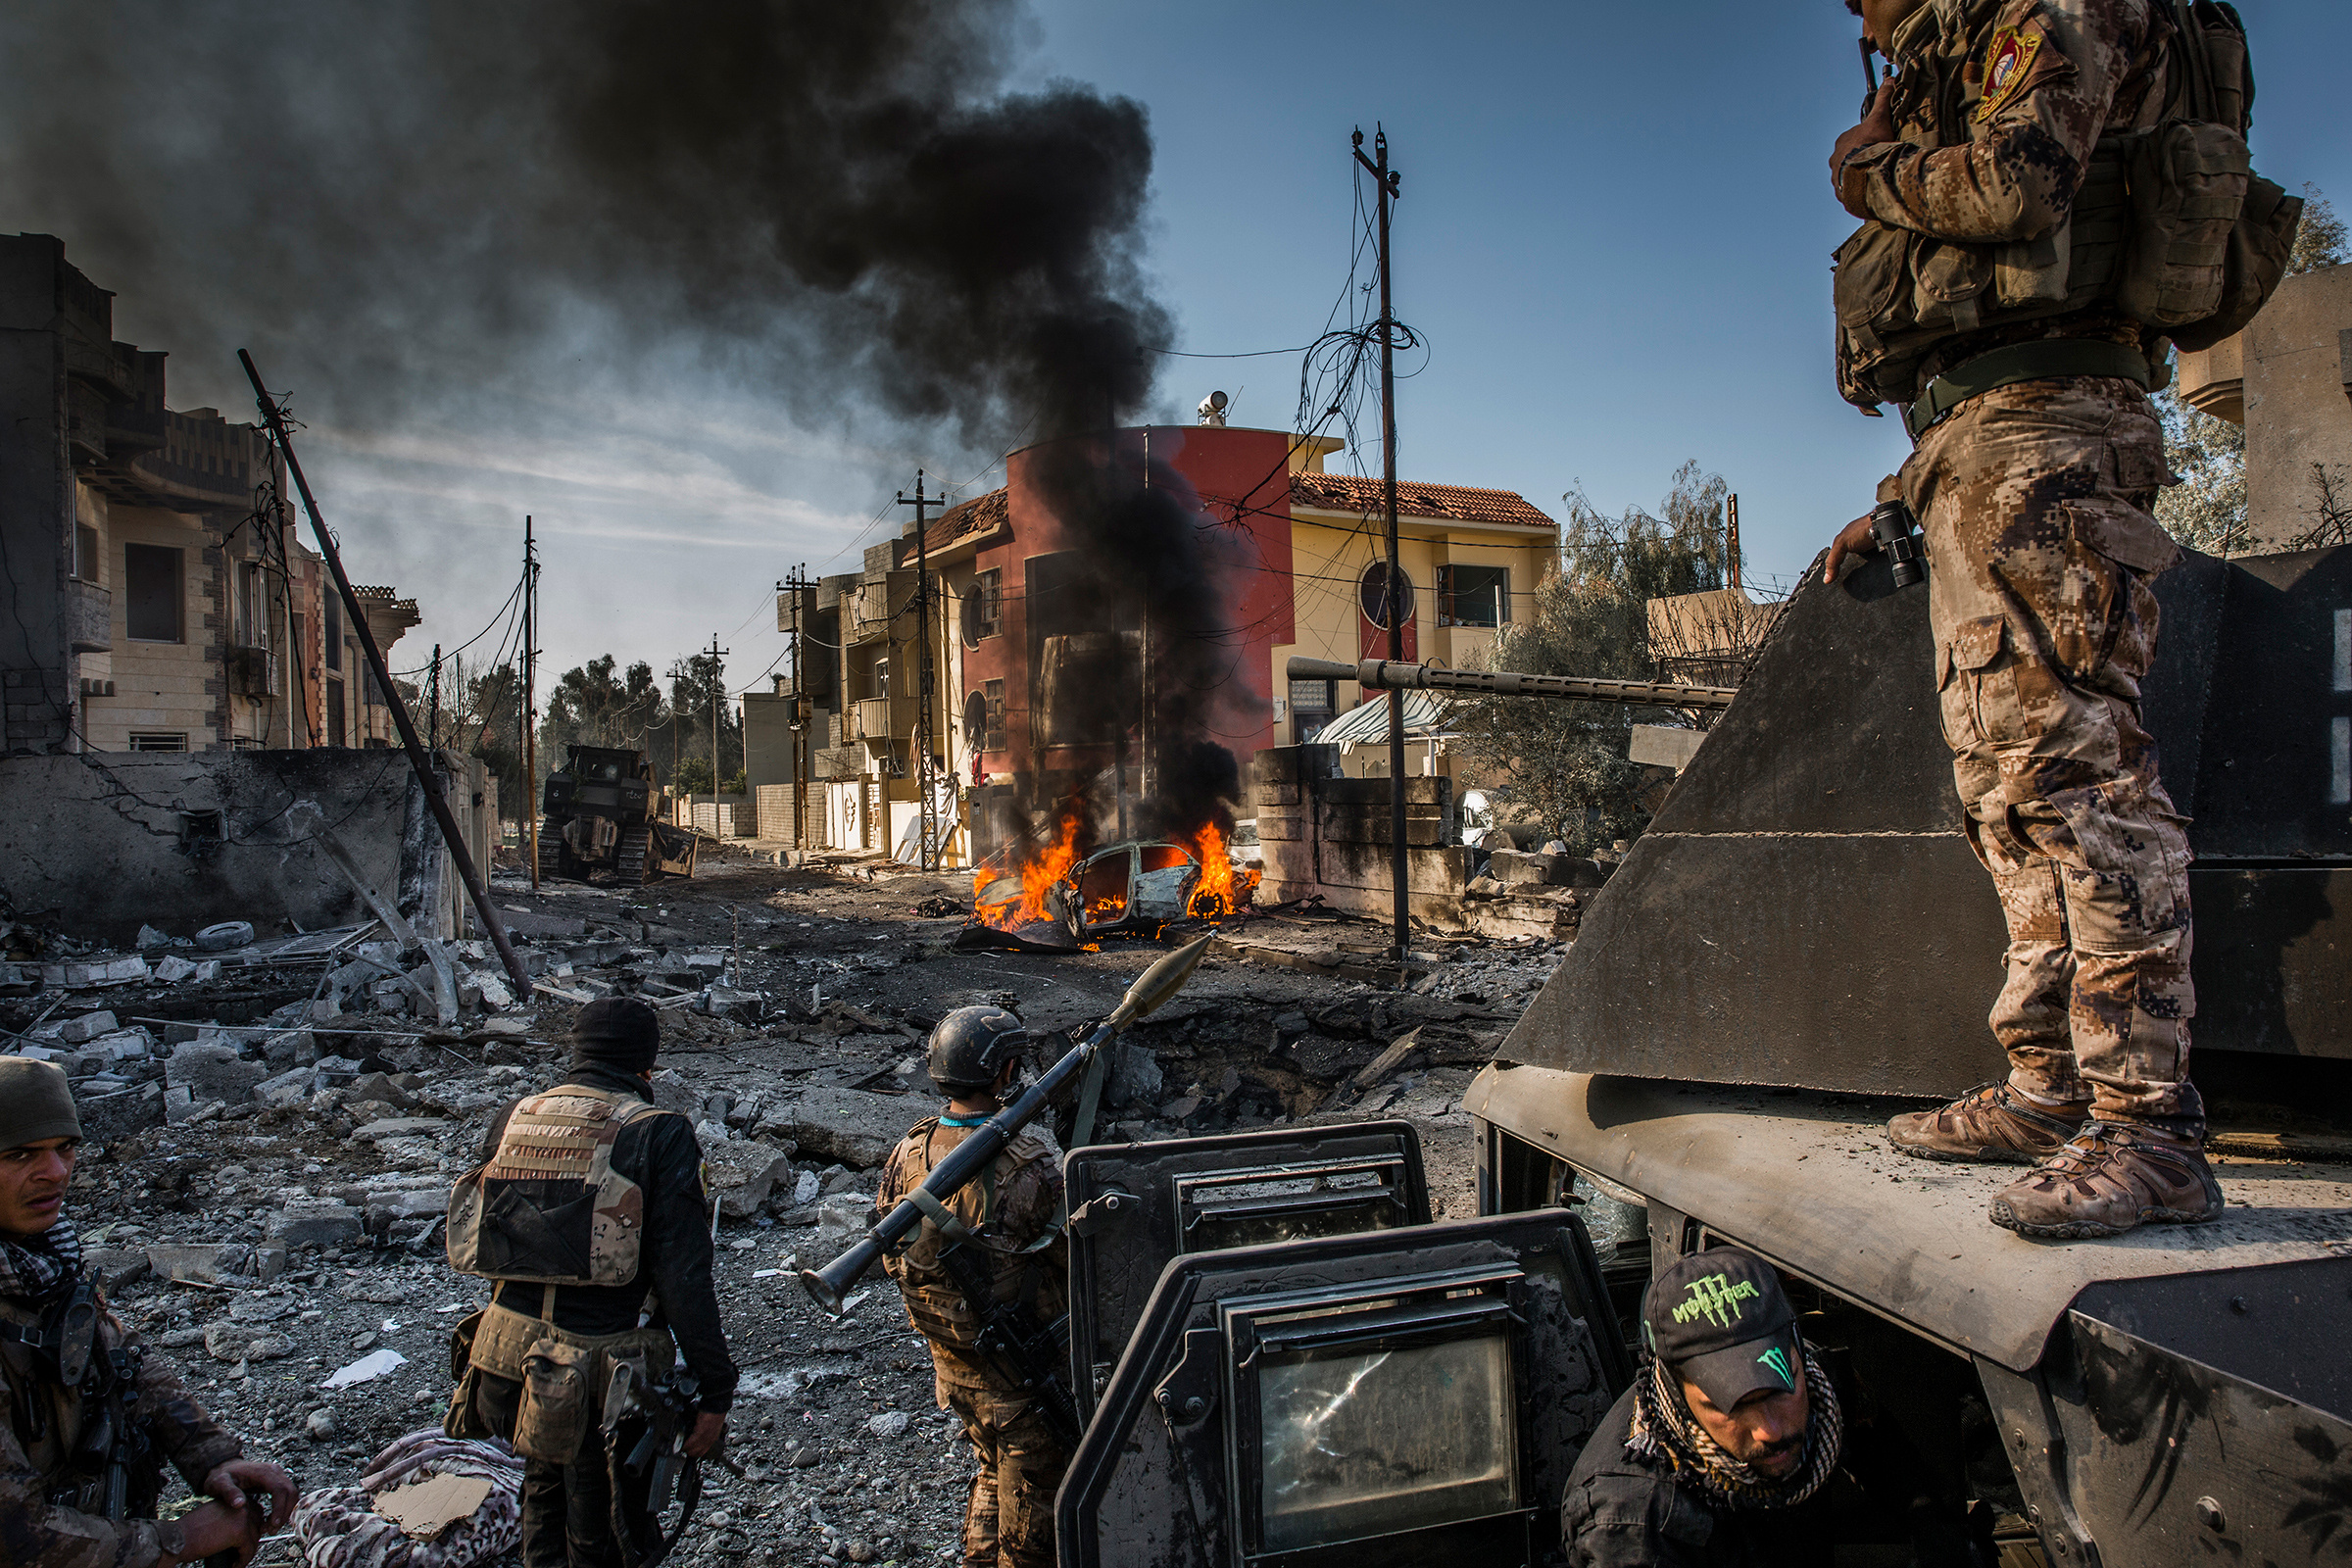 Айвор Прикетт, Ирландия

На снимке ирландского фотографа изображена битва за Мосул в Ираке: военные изучают последствия нападения террориста-смертника из&nbsp;ИГ&nbsp;(запрещенная в России организация)
